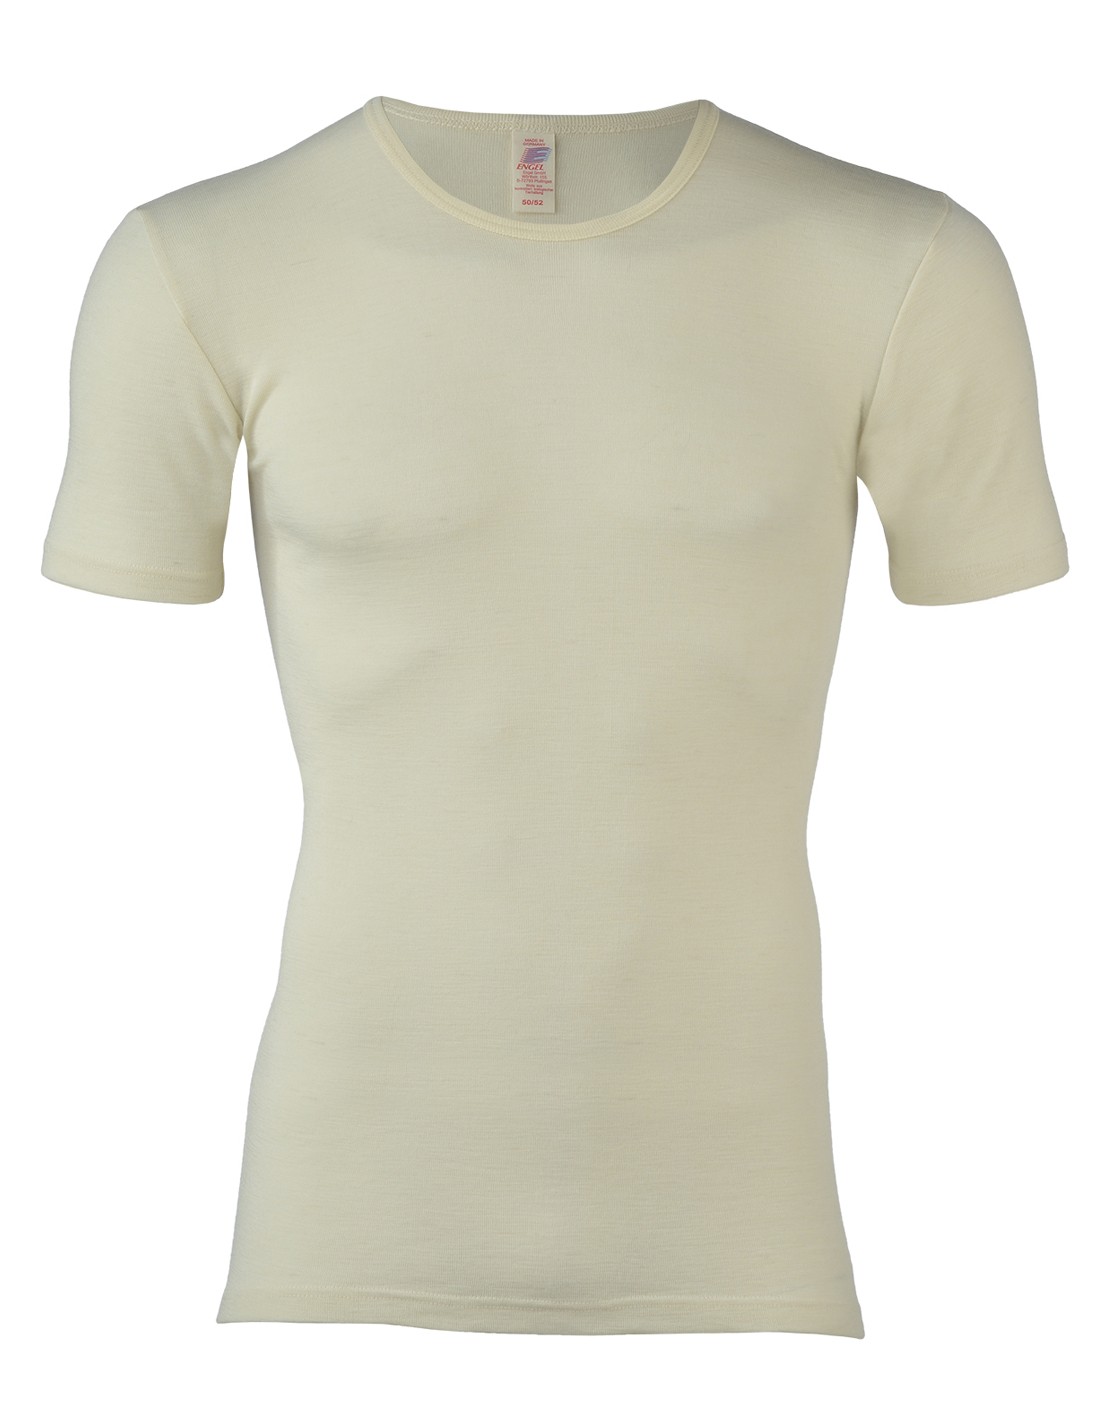 Heren T-Shirt Wit Merino Wol Engel Natur, Maat 50/52 - Large Top Merken Winkel